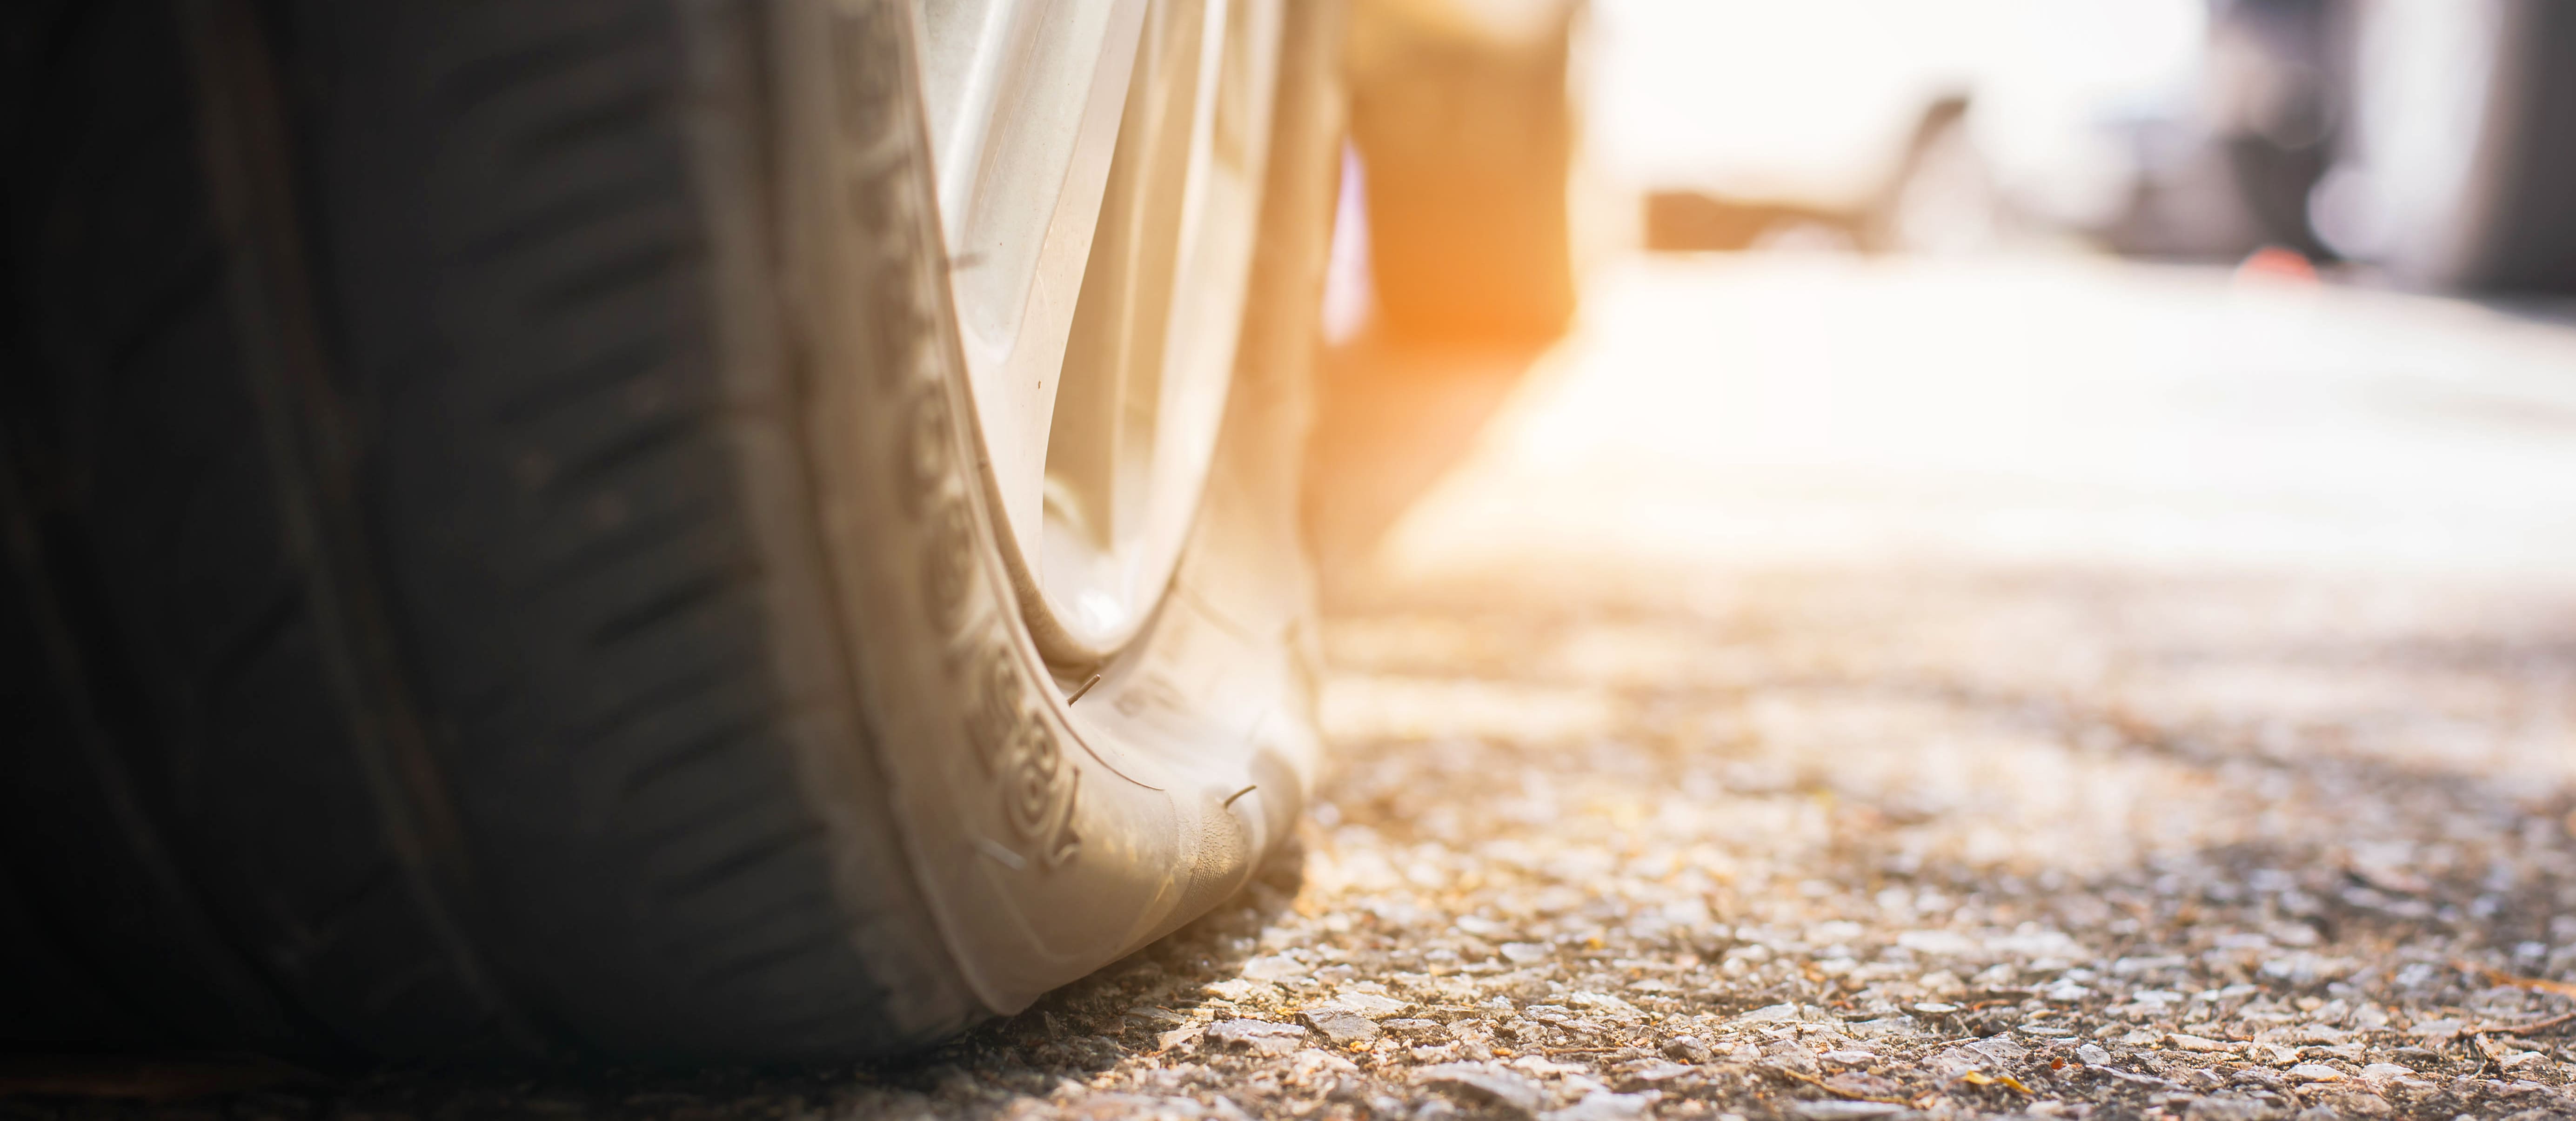 Reifenpanne - die verschiedenen Schäden, ihre Ursachen und die Reparatur